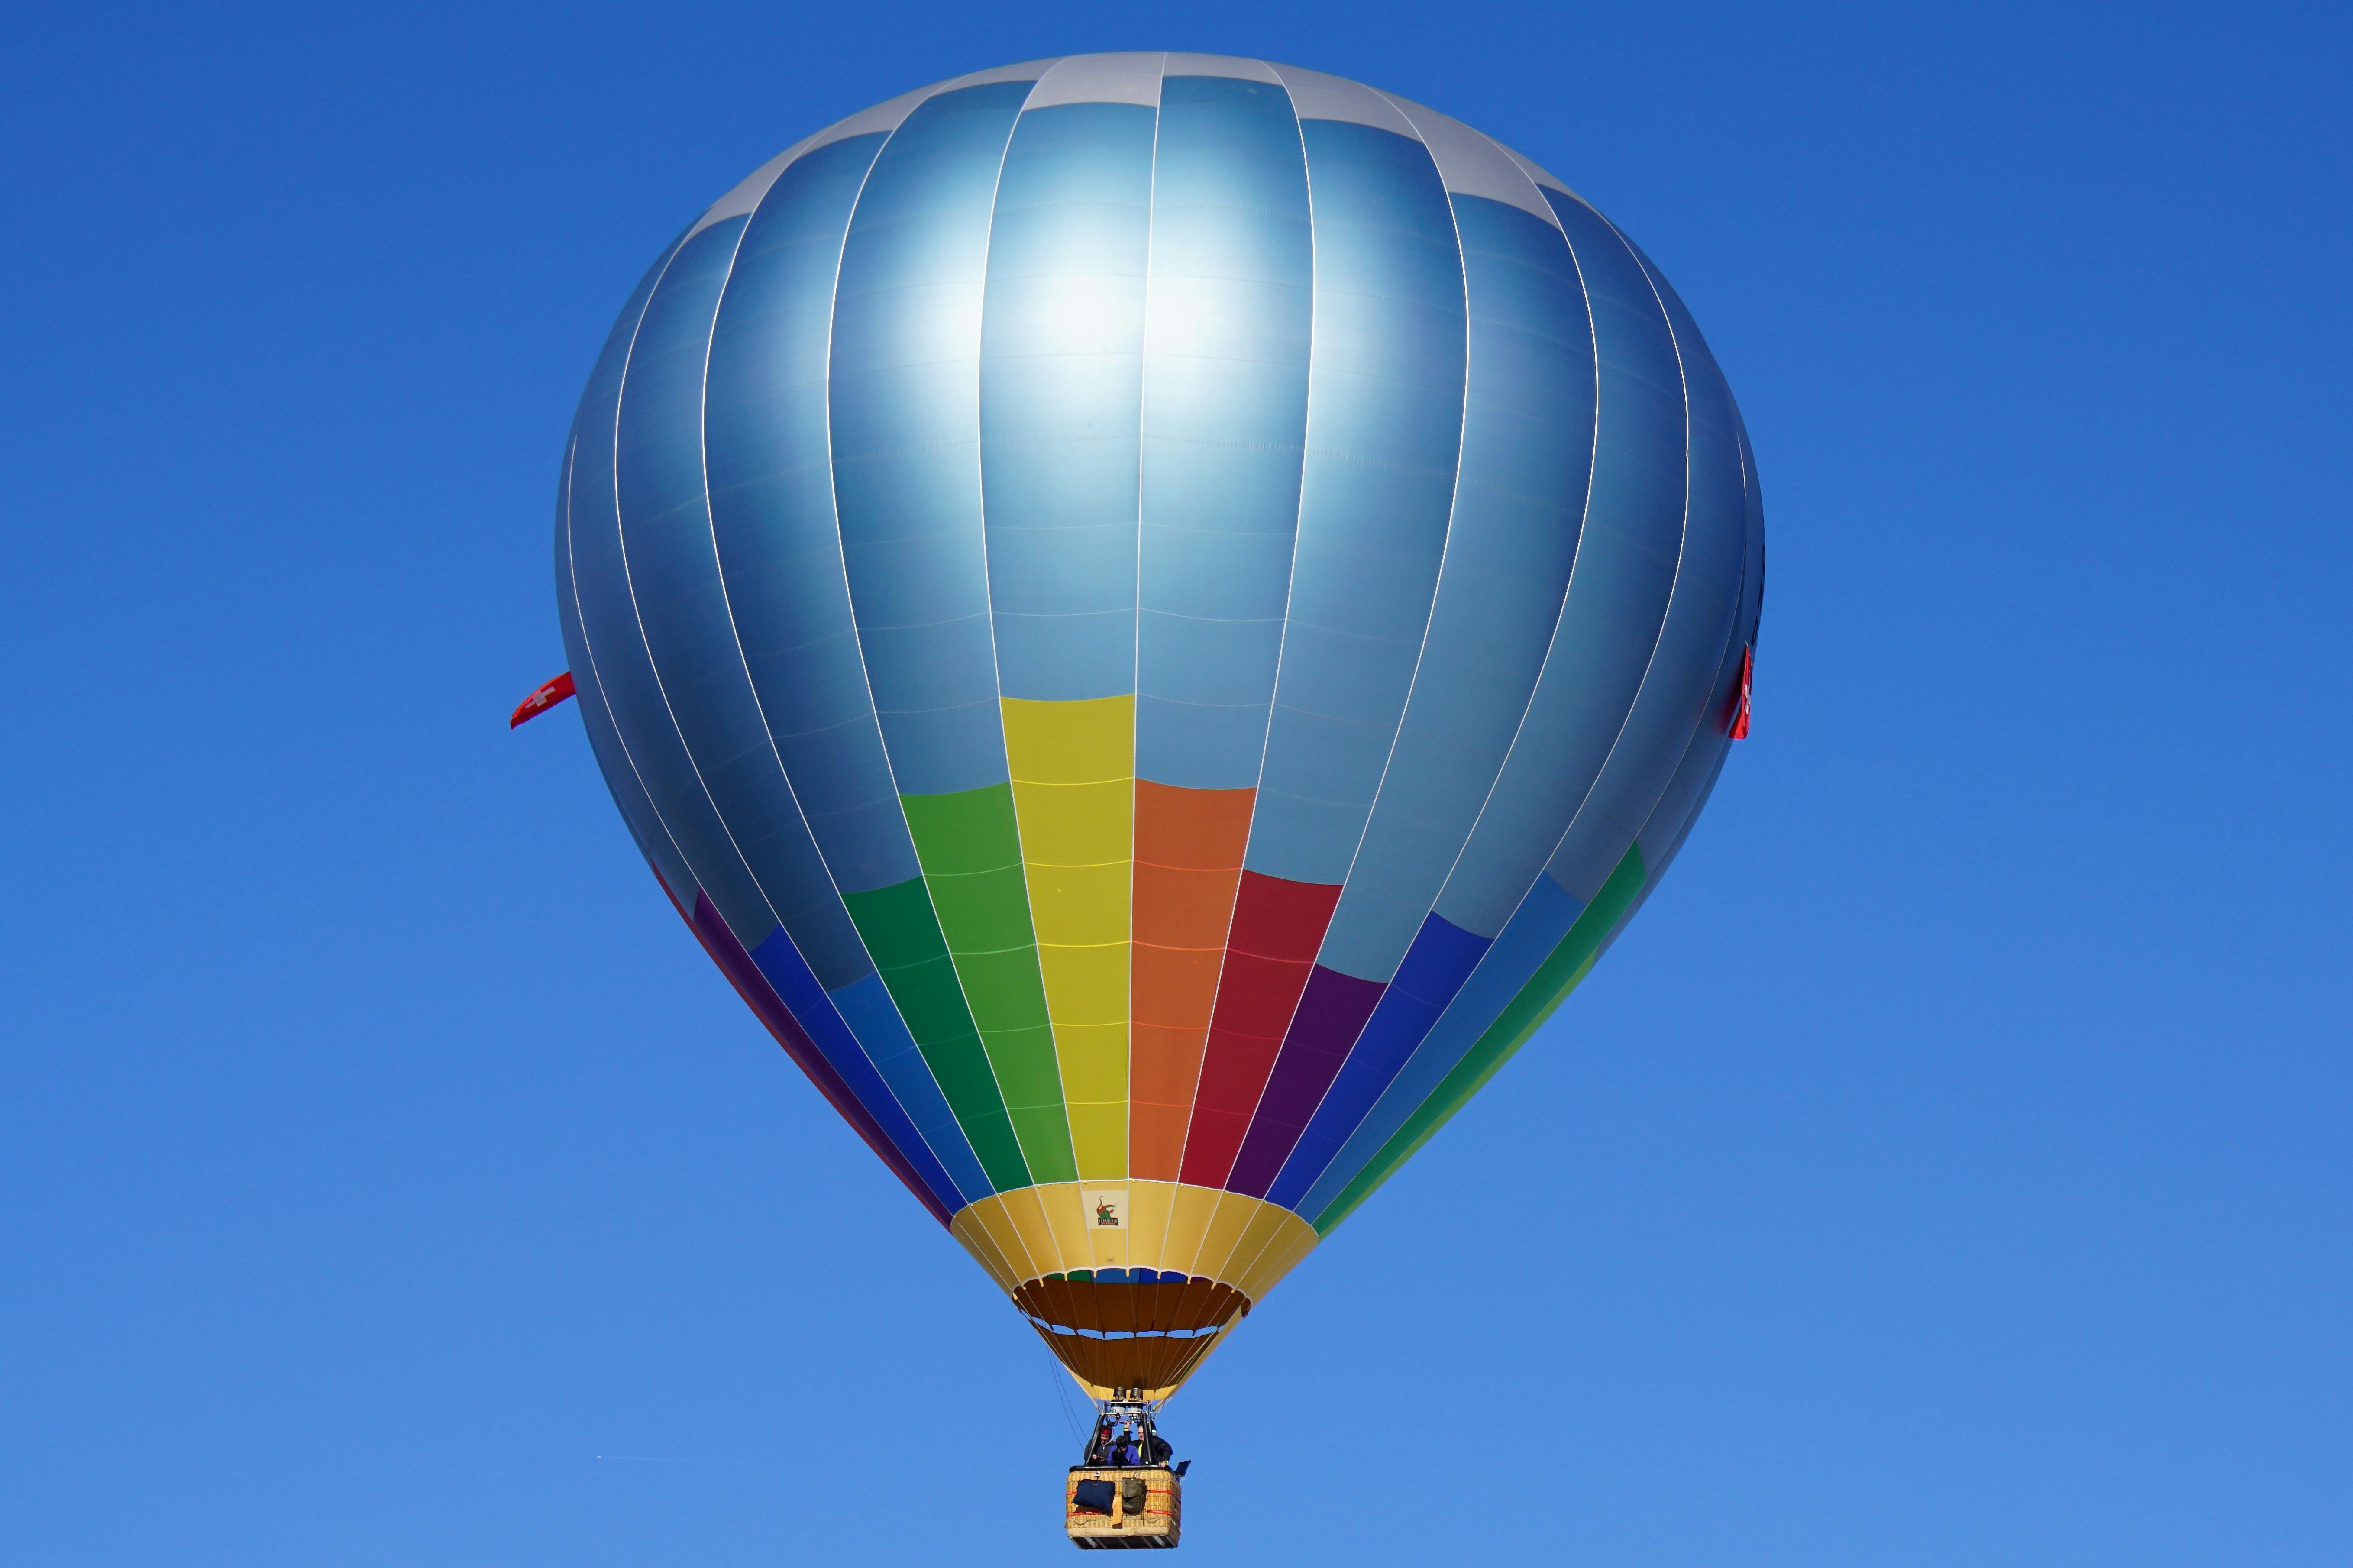 Image libre: Air, ciel bleu, nuage, ballon, message